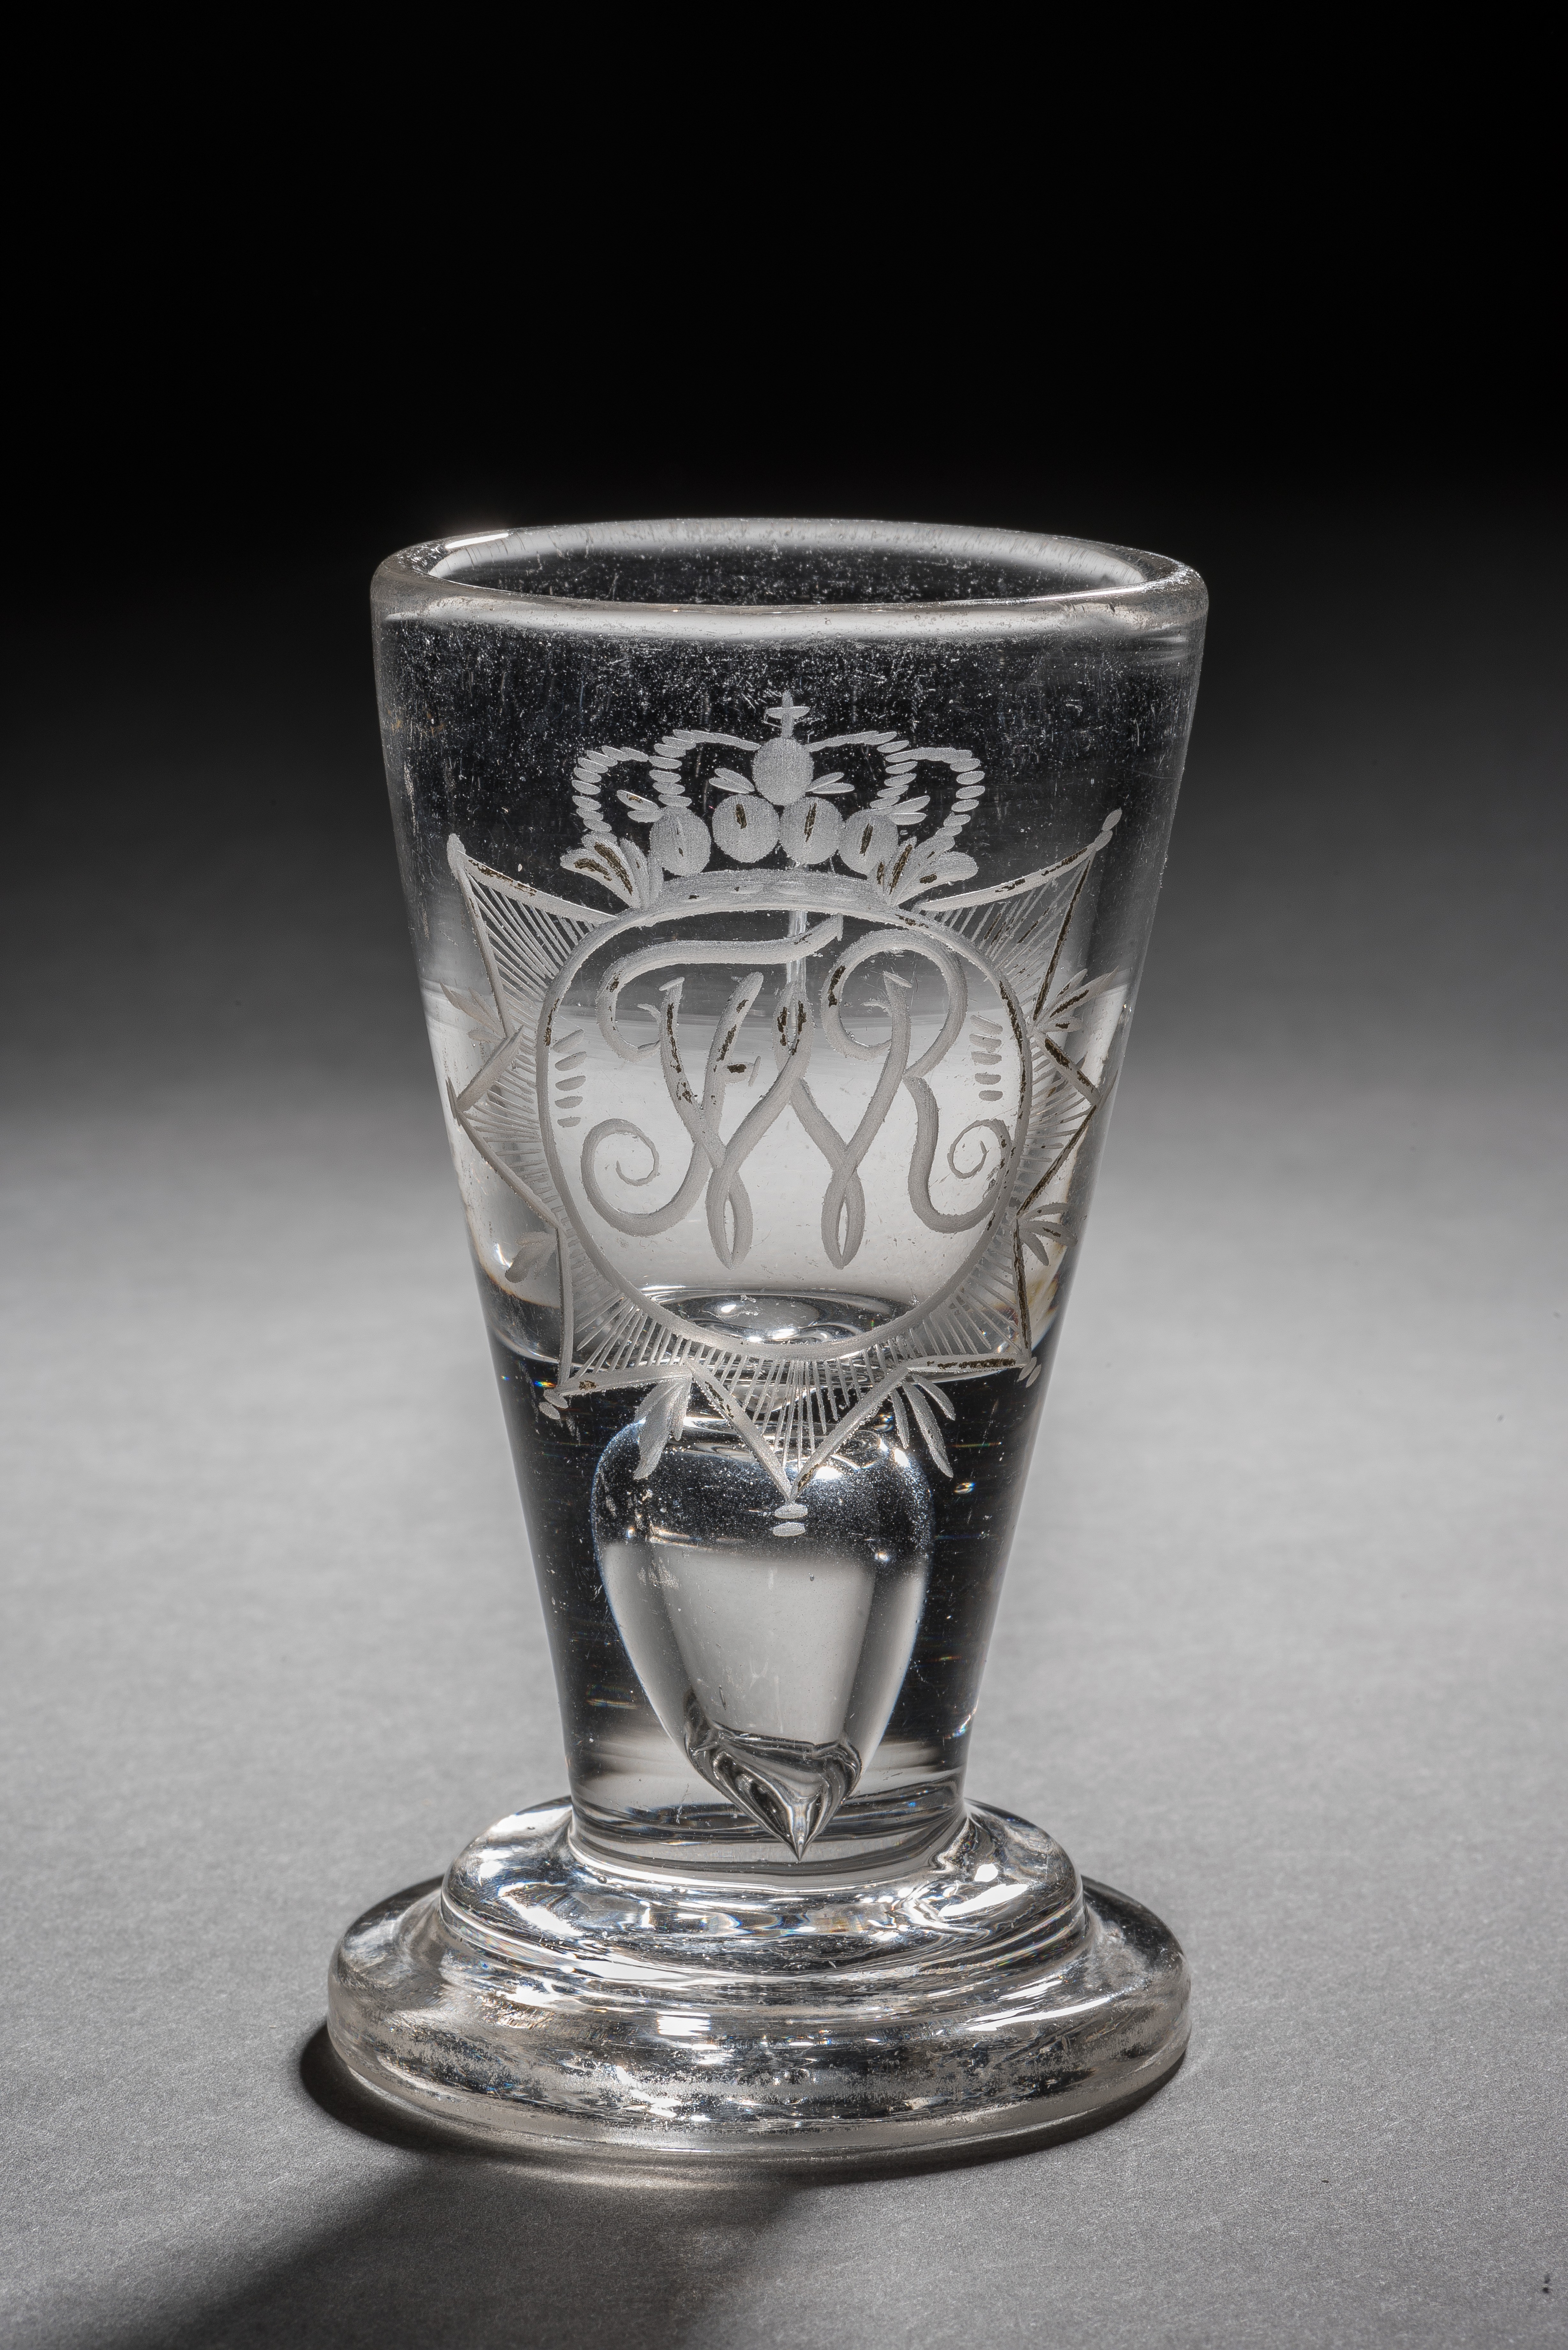 Branntweinglas "Wachtmeister" mit Monogramm FWR, XIII 709. (Stiftung Preußische Schlösser und Gärten Berlin-Brandenburg CC BY-NC-SA)